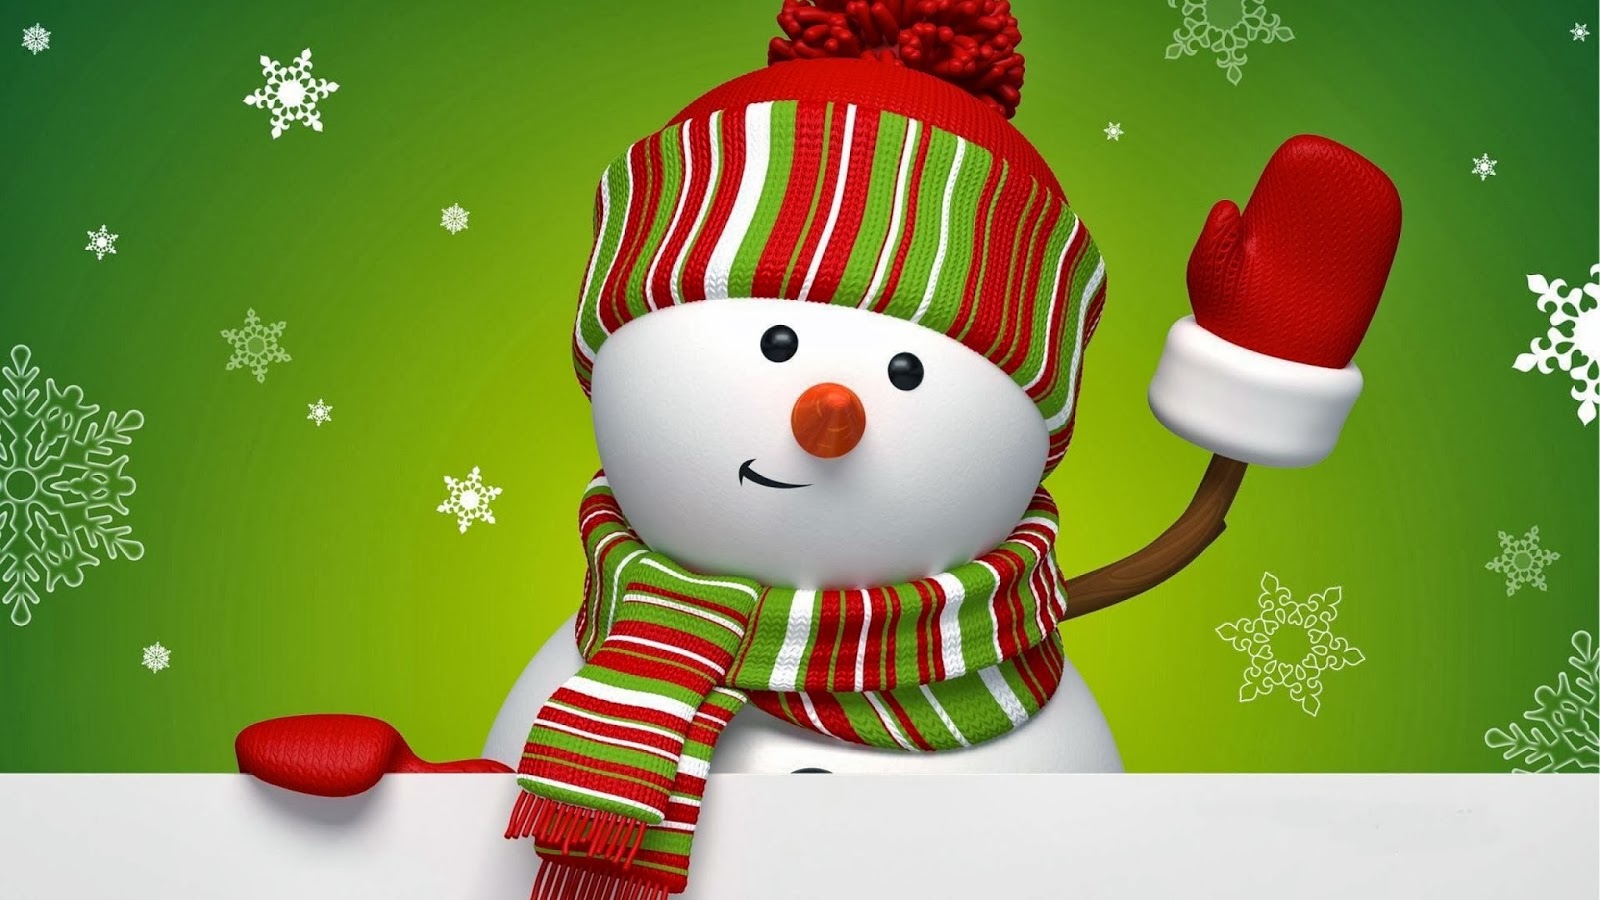 クリスマス雪だるまの壁紙,クリスマス,雪だるま,架空の人物,クリスマスの飾り,お菓子